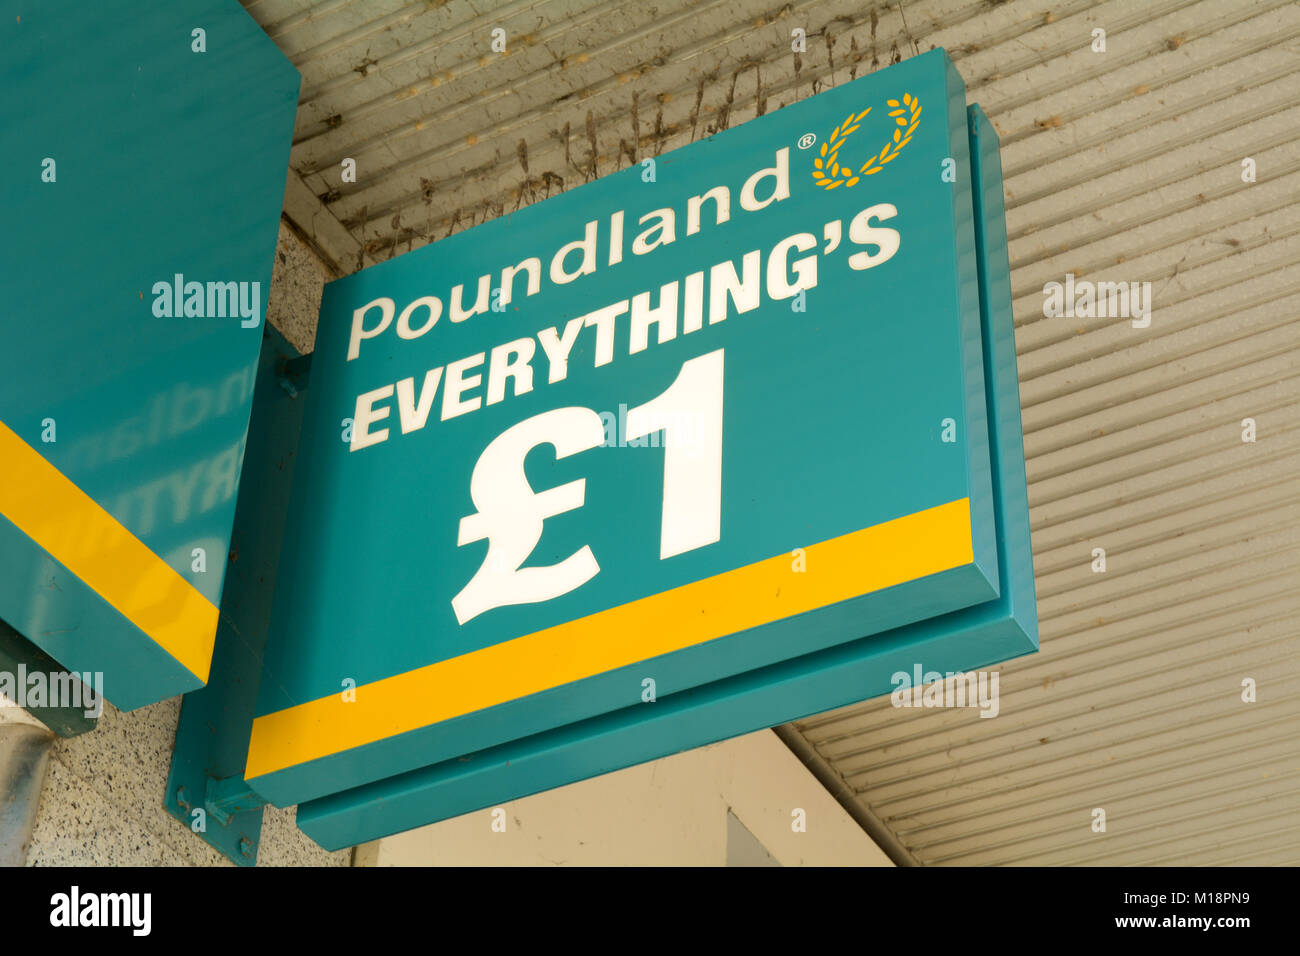 Poundland Everything's £1 sign outside shop Stock Photo